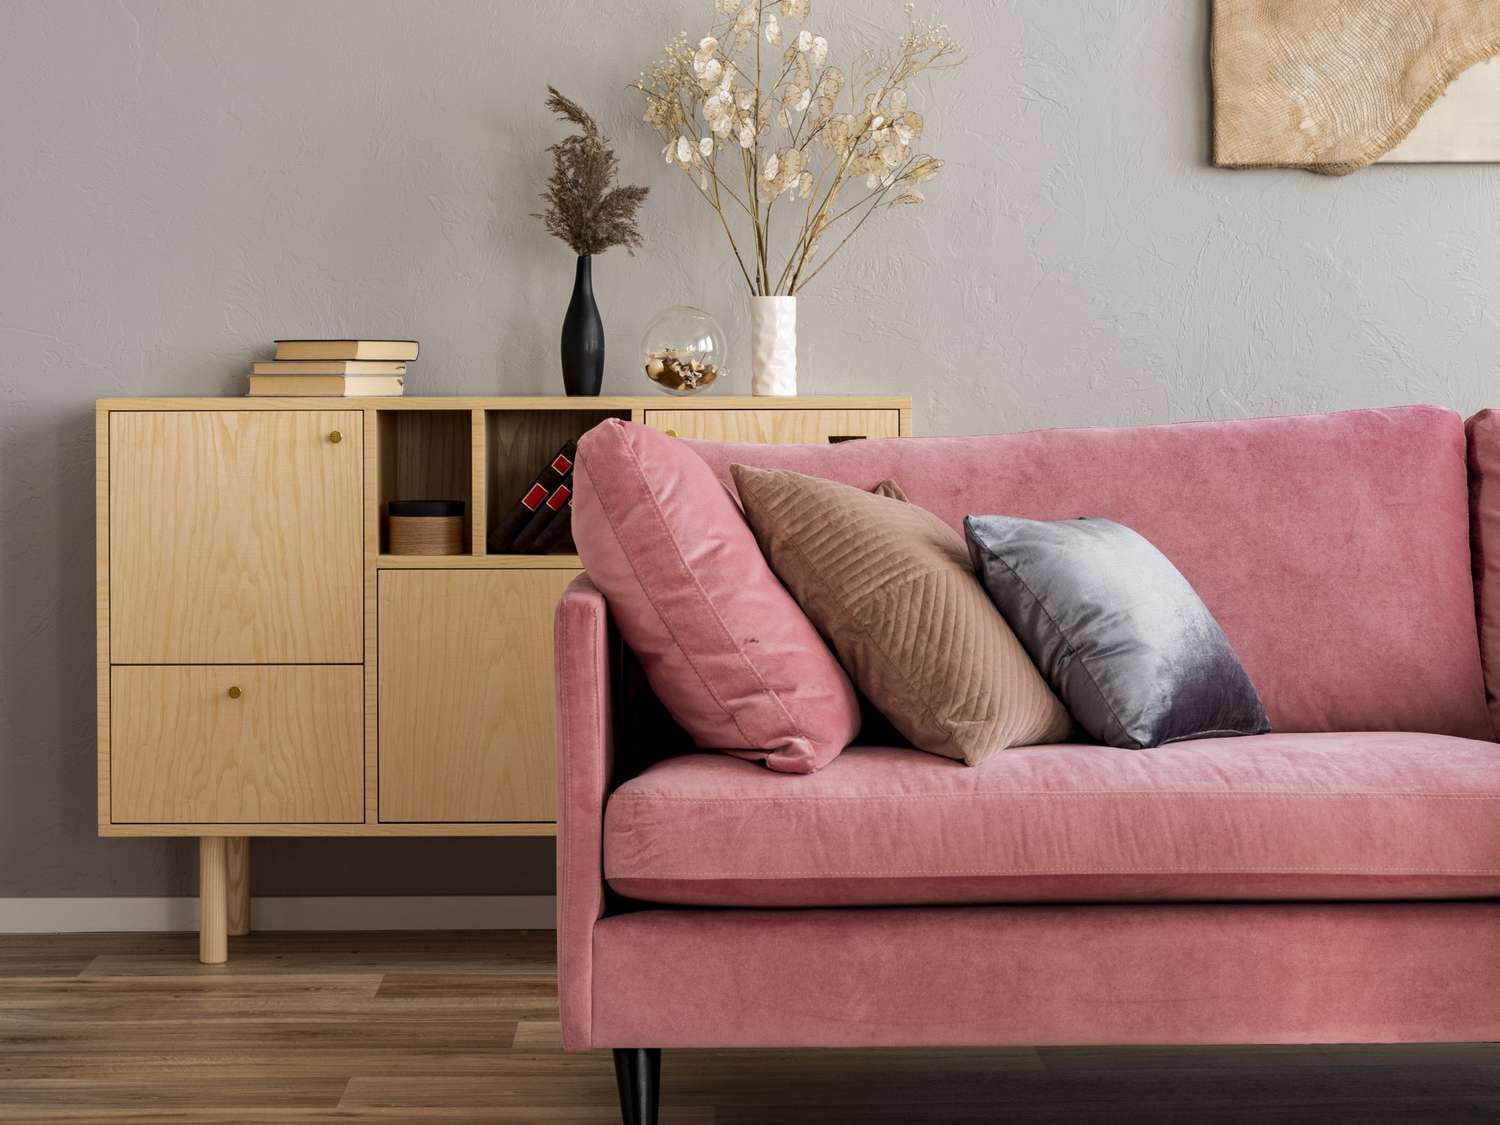 Flores em vasos sobre cômoda de madeira no interior de uma sala de estar contemporânea com sofá rosa pastel